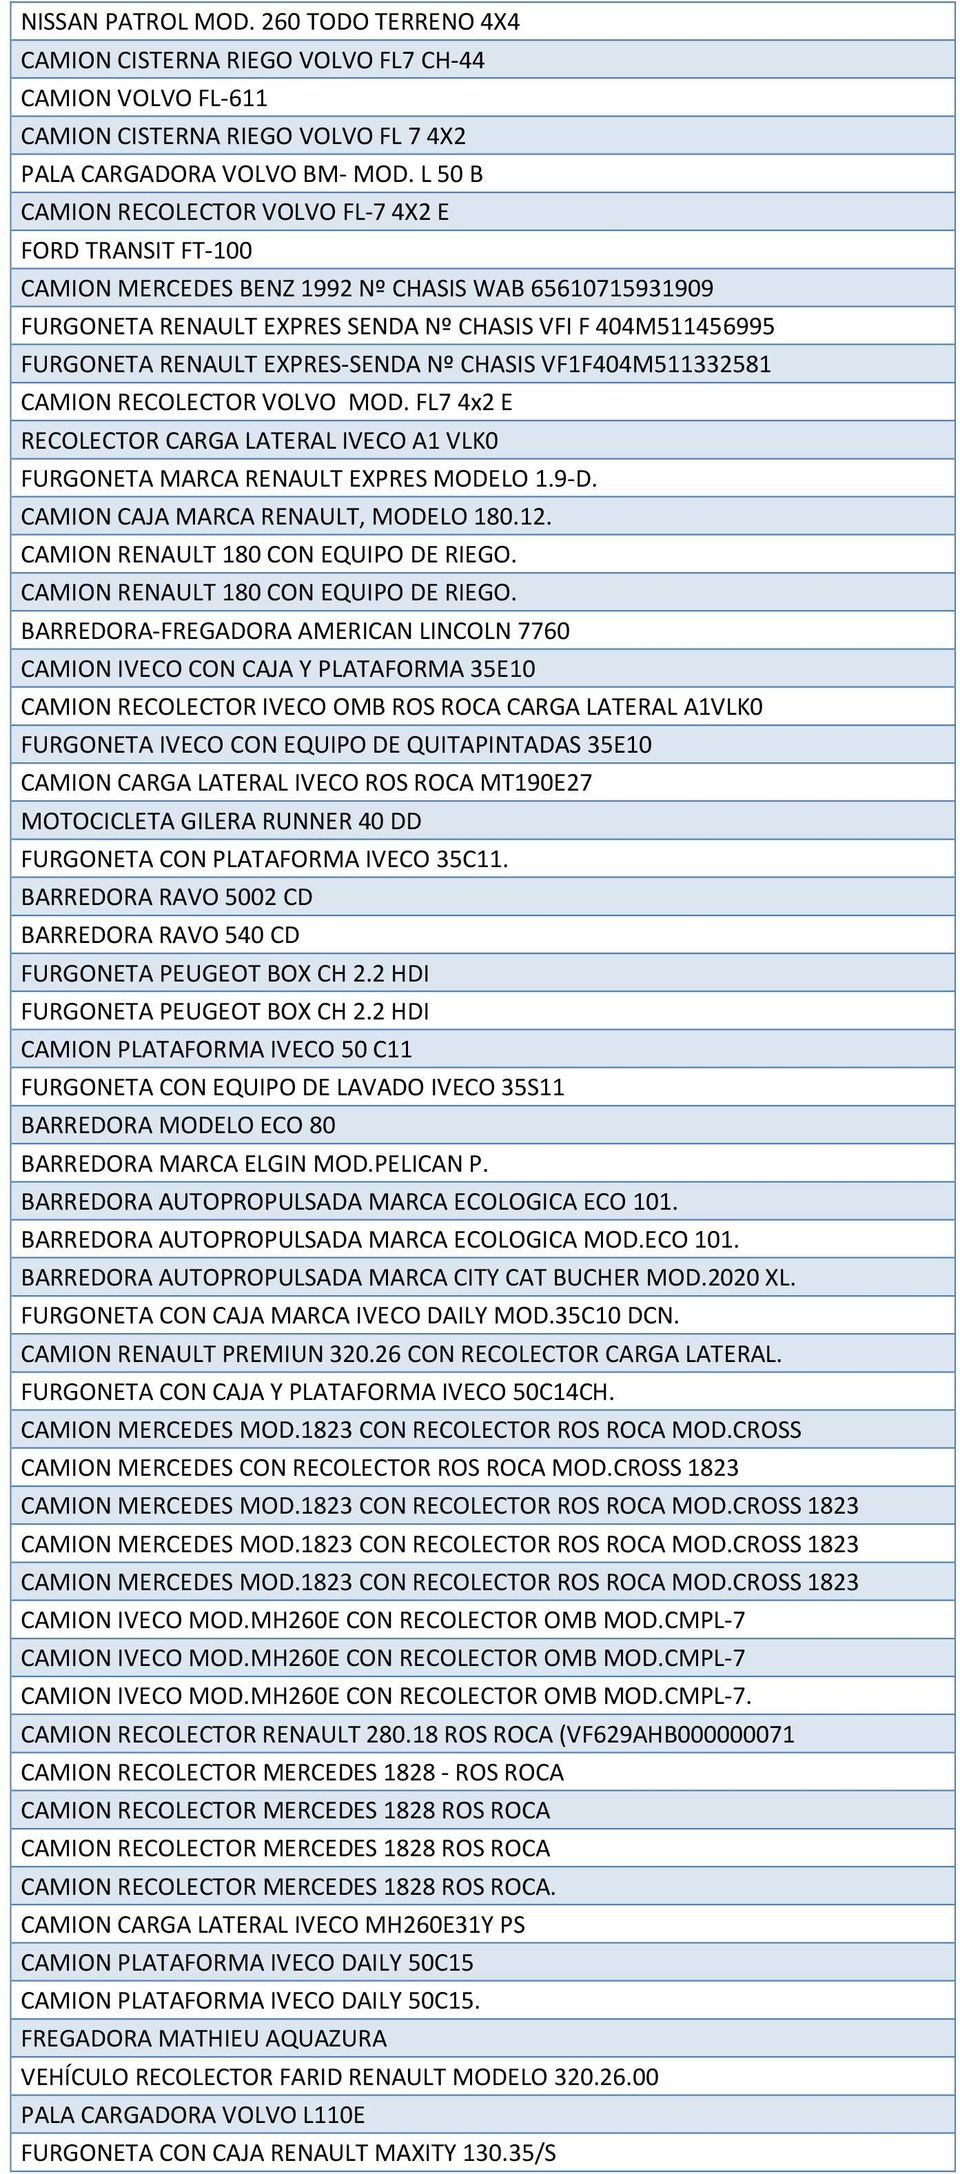 EXPRES-SENDA Nº CHASIS VF1F404M511332581 CAMION RECOLECTOR VOLVO MOD. FL7 4x2 E RECOLECTOR CARGA LATERAL IVECO A1 VLK0 FURGONETA MARCA RENAULT EXPRES MODELO 1.9-D.